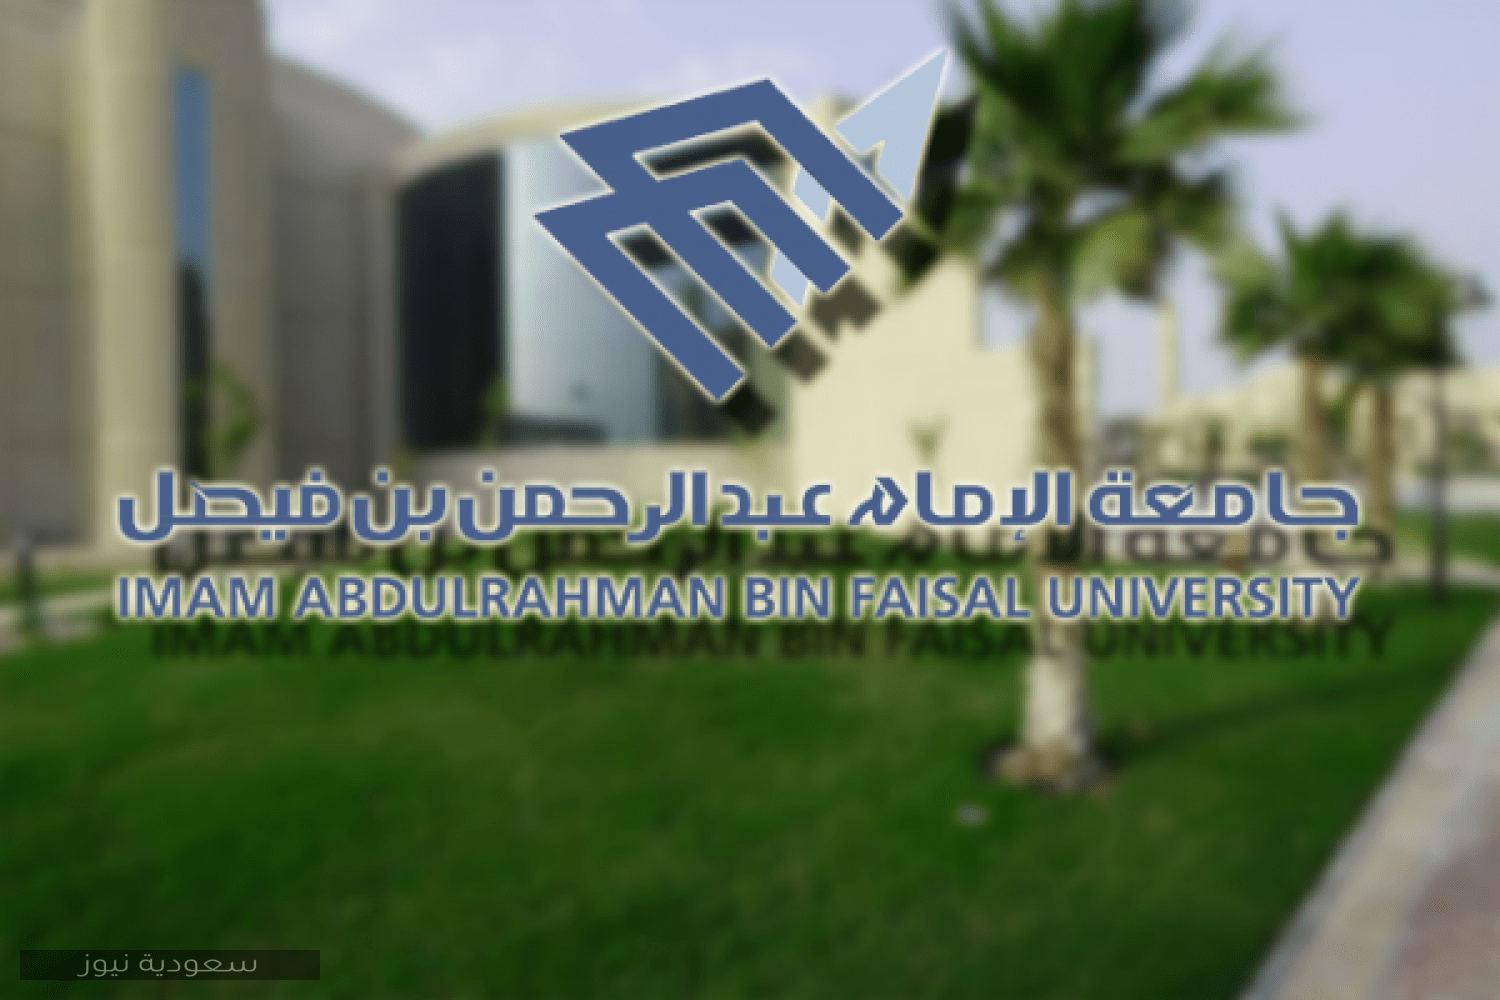 تسجيل المقررات جامعة الامام عبدالرحمن بن فيصل